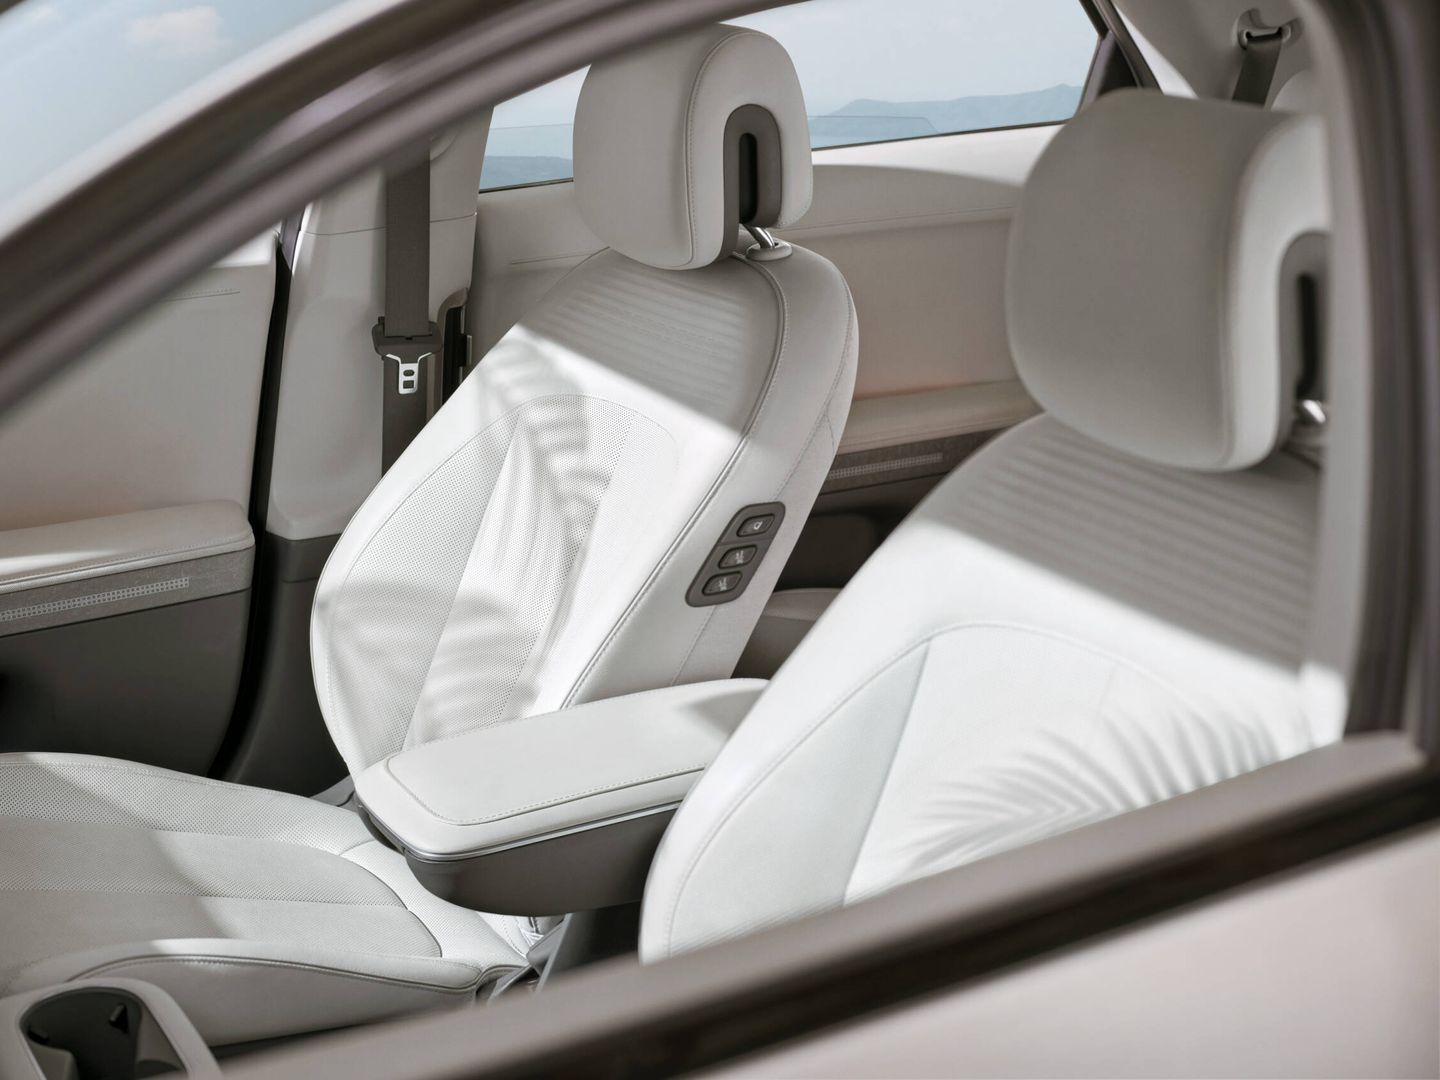 Los asientos son muy cómodos y sujetan bien. Contribuyen al alto nivel de confort del coche.